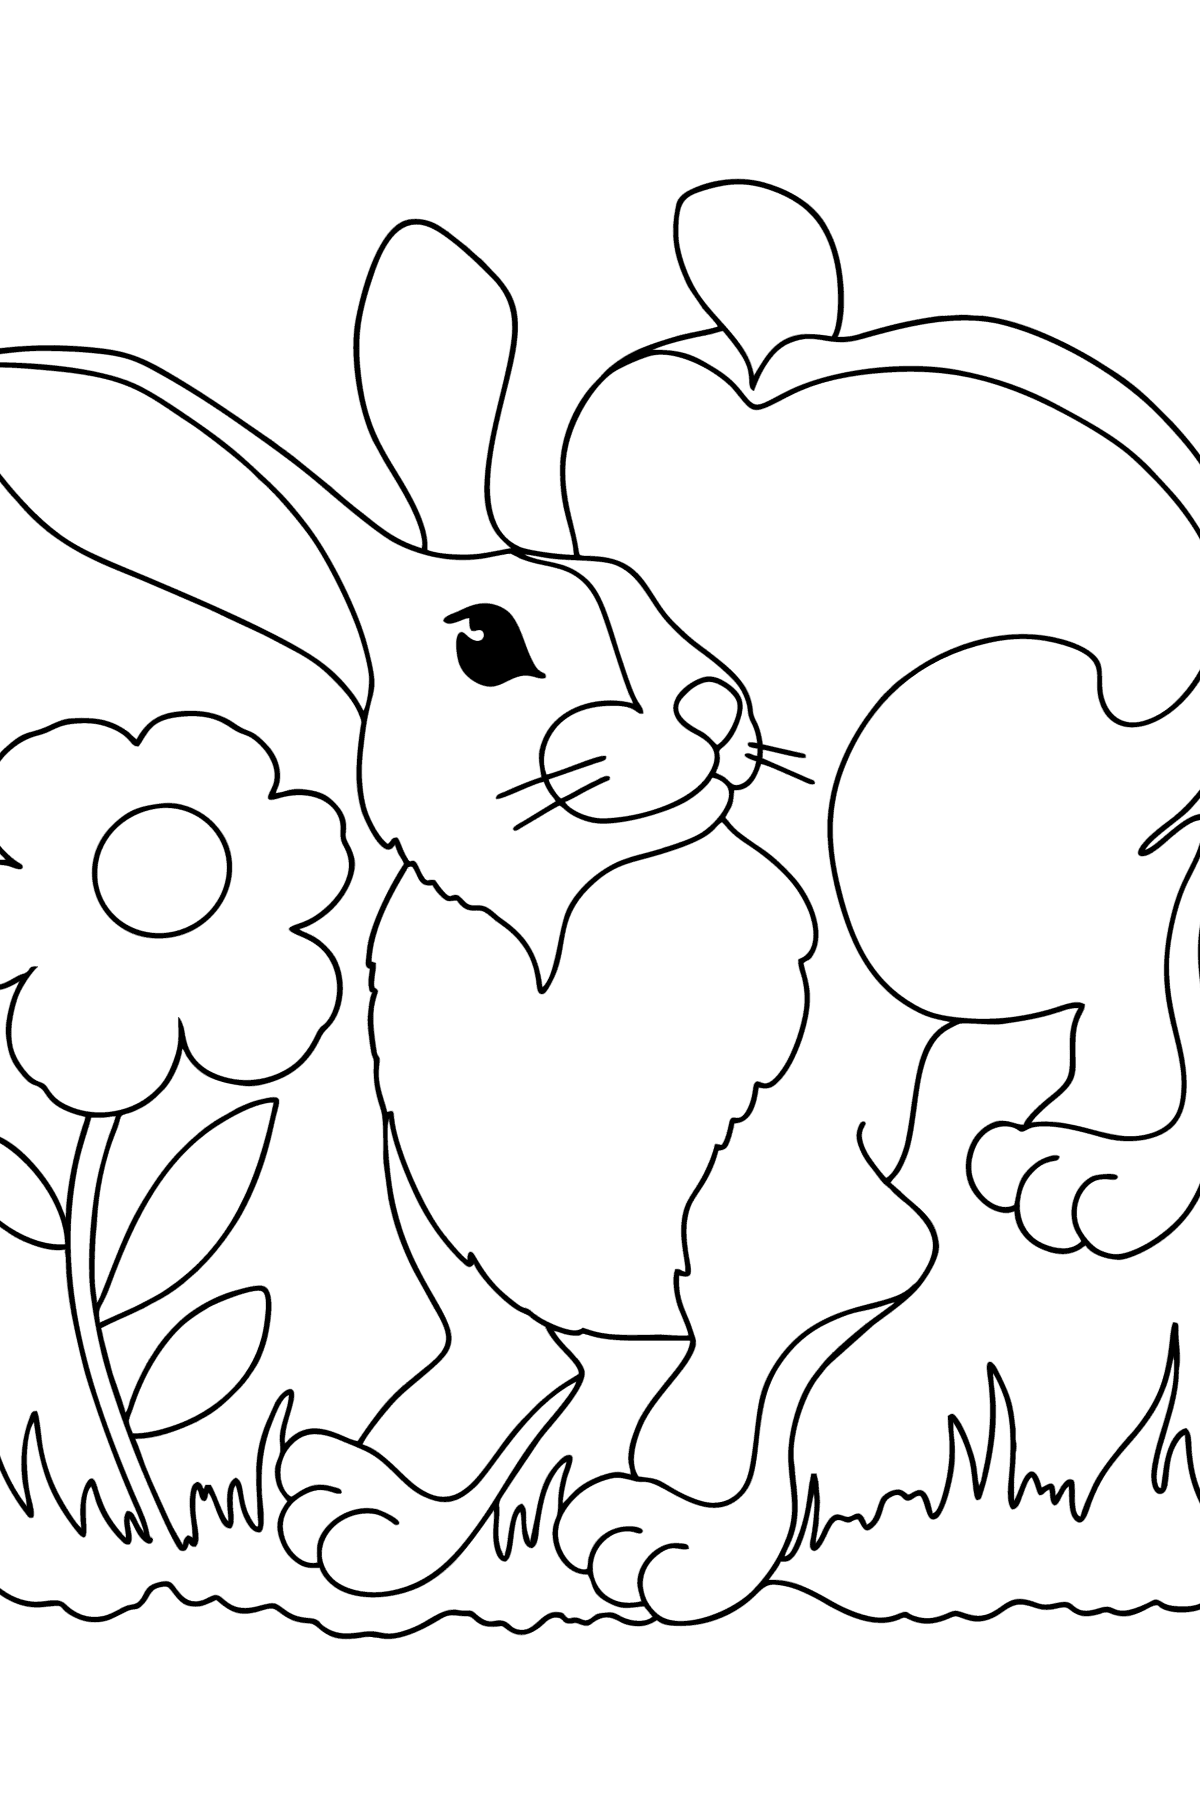 Dibujo de Conejito feliz para colorear - Dibujos para Colorear para Niños